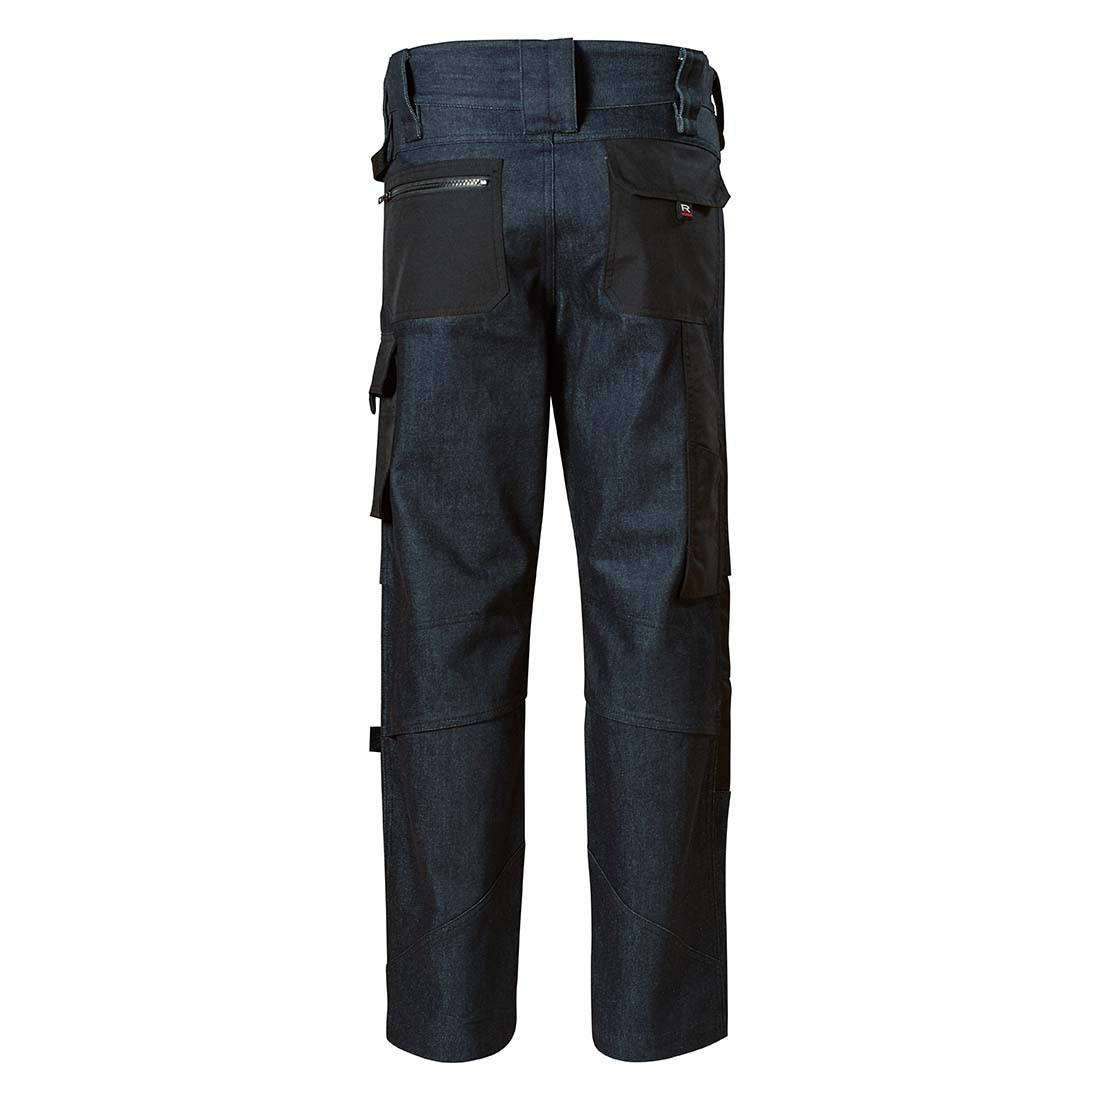 VERTEX Work jeans men’s - Safetywear